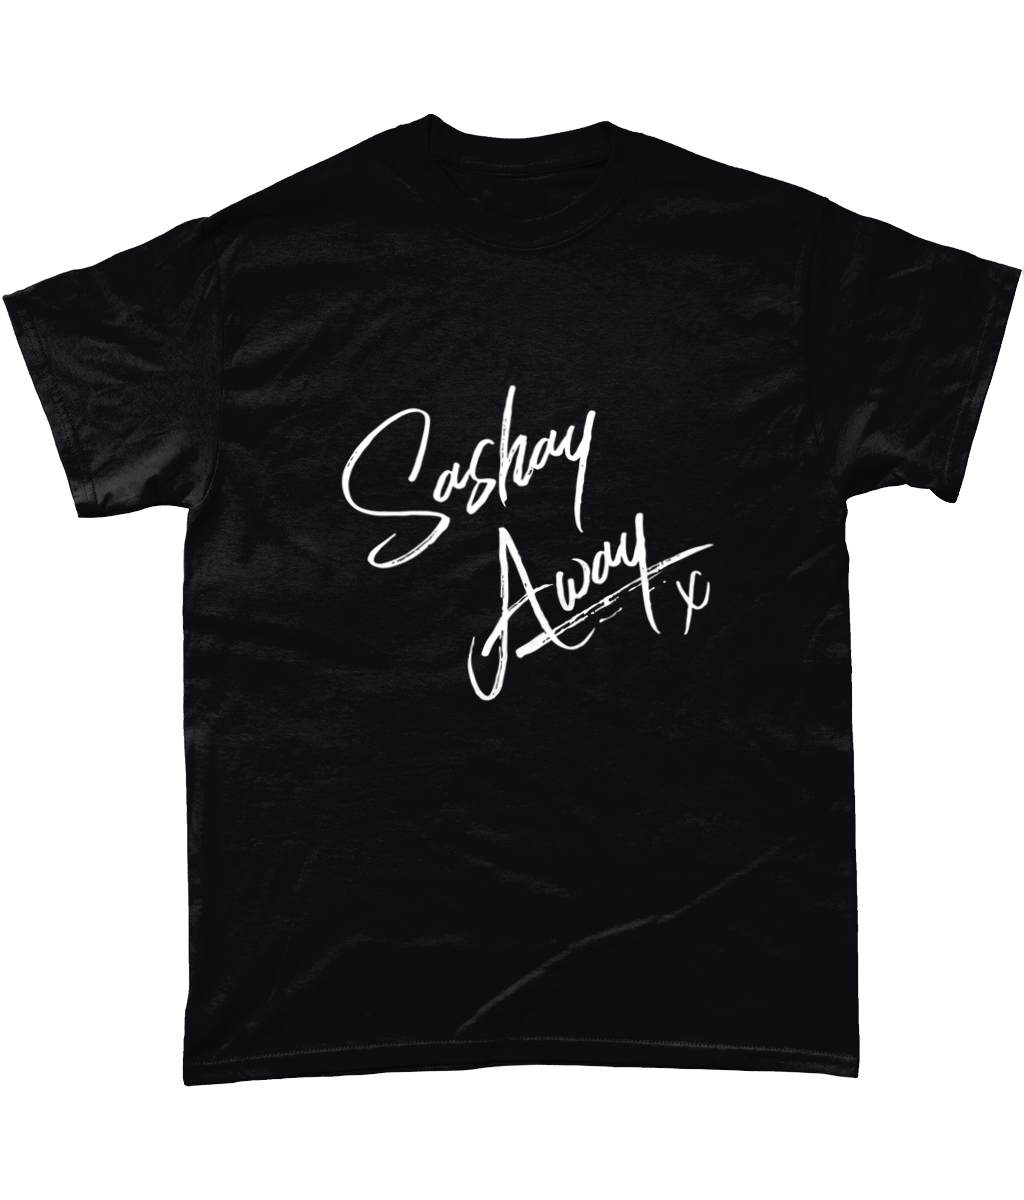 Sashay Away - T-Shirt